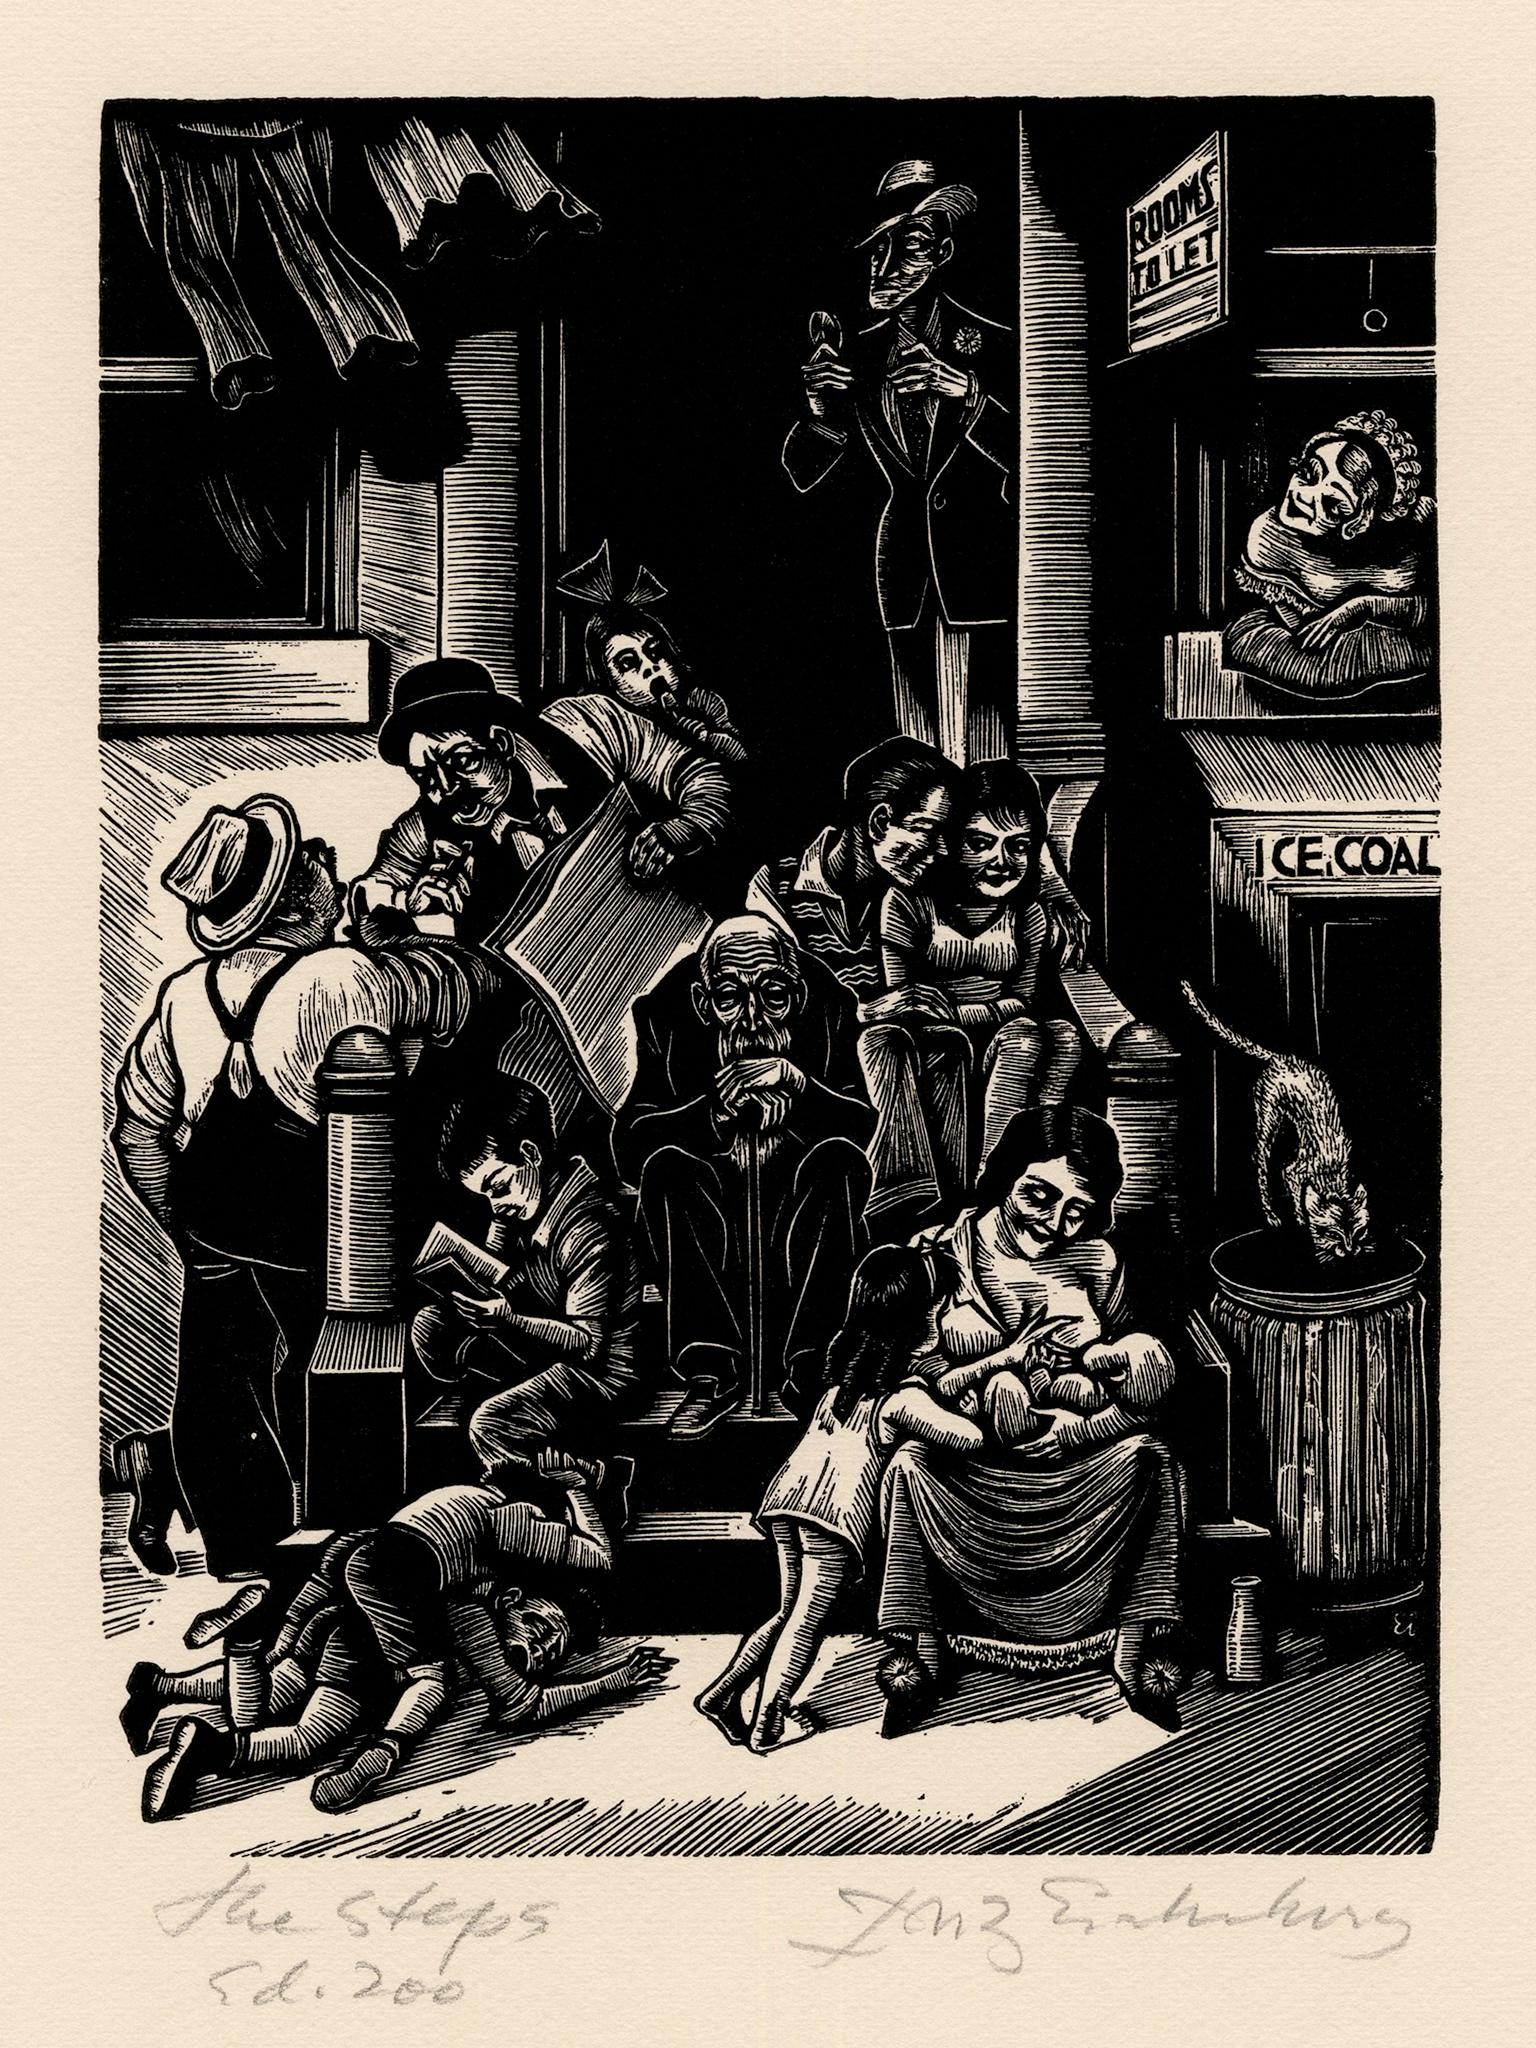 Fritz Eichenberg. Figurative Print – The Steps" - WPA-Ära 1930er Jahre Grafische Modernität